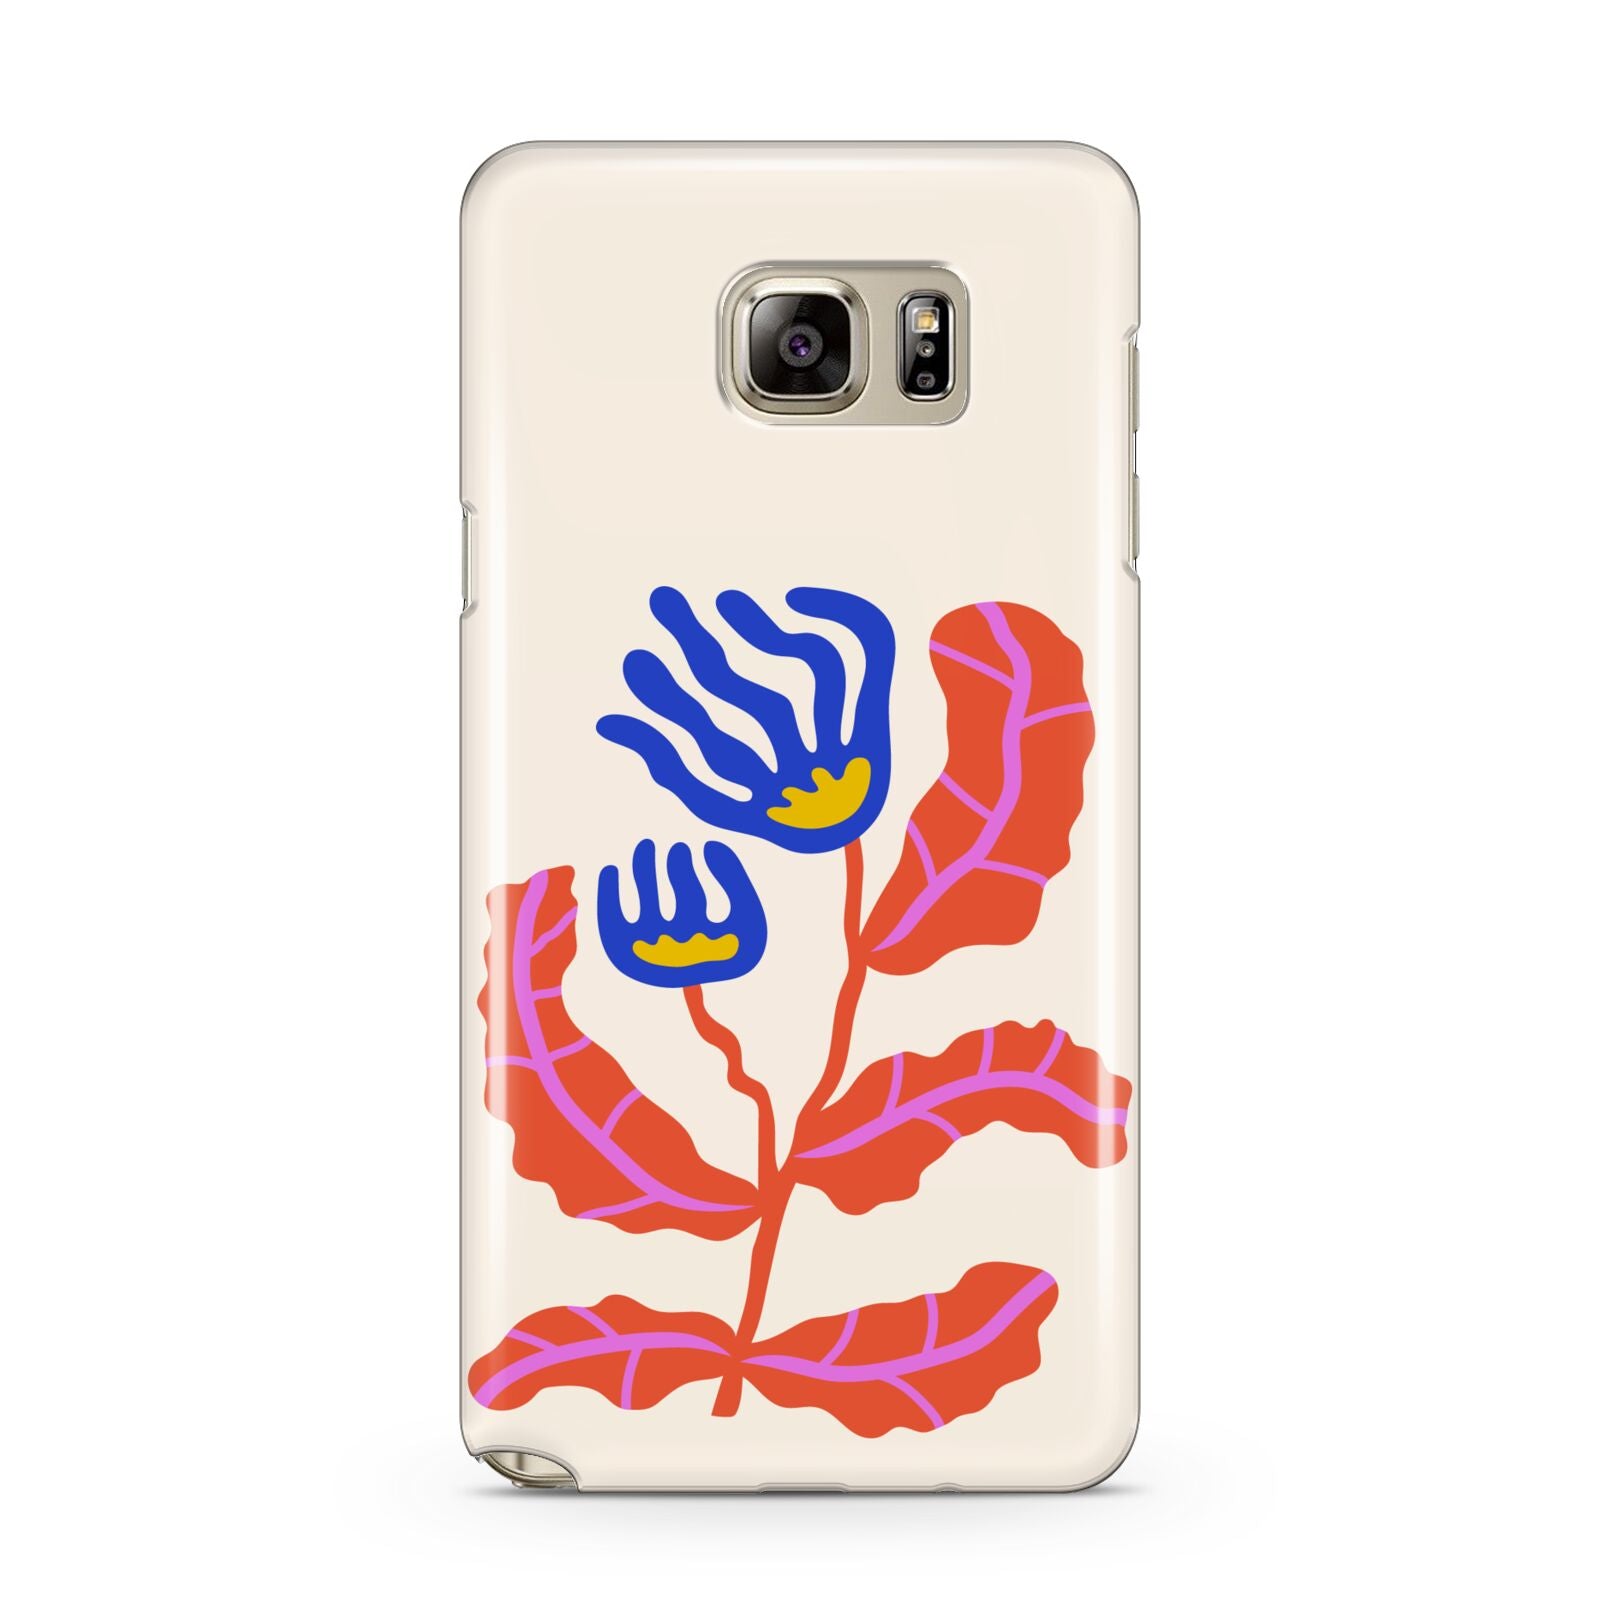 Contemporary Floral Samsung Galaxy Note 5 Case